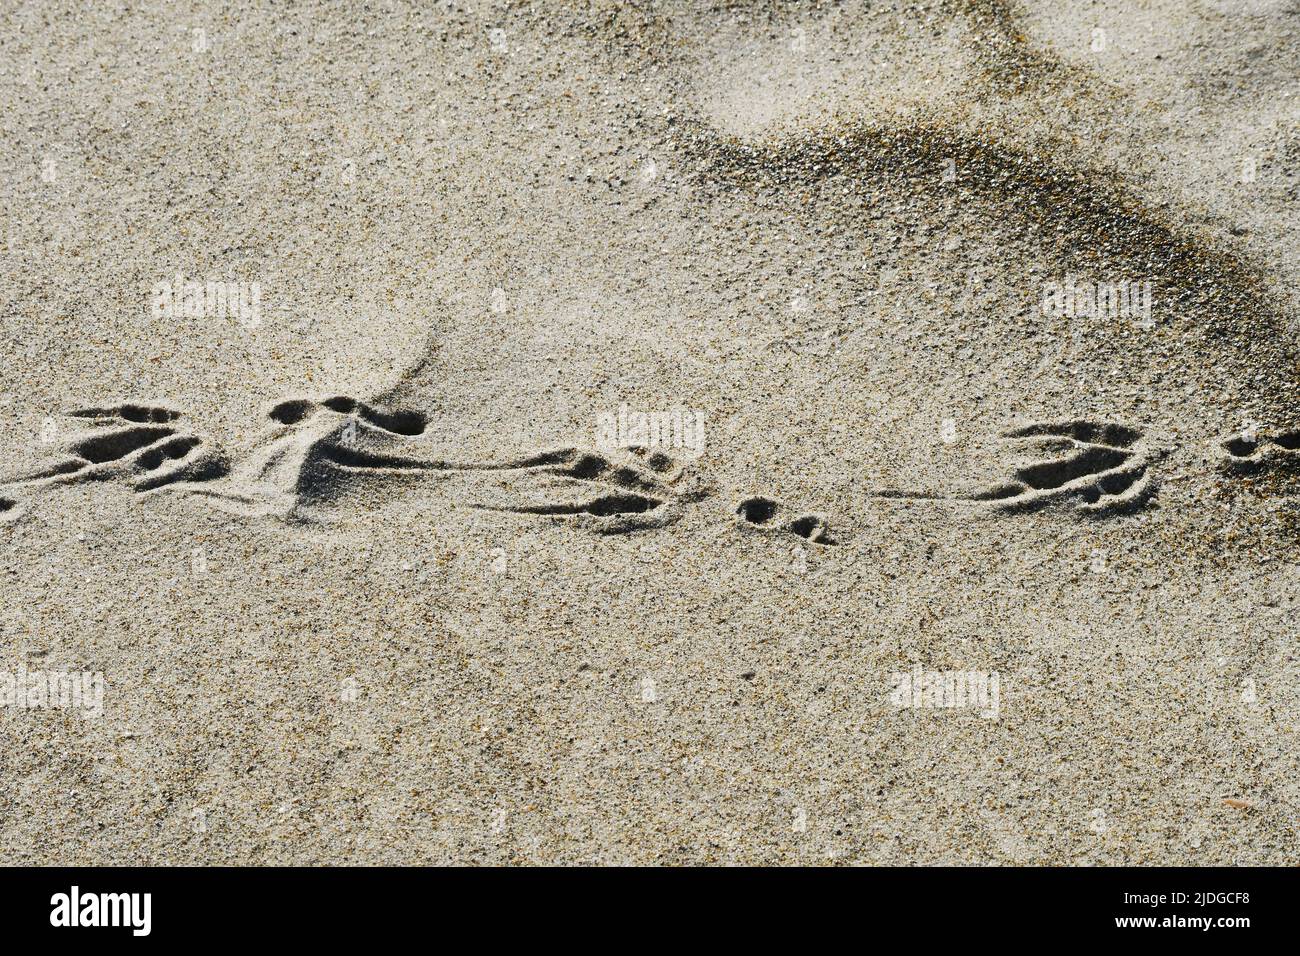 Bird foot print on sand Stock Photo